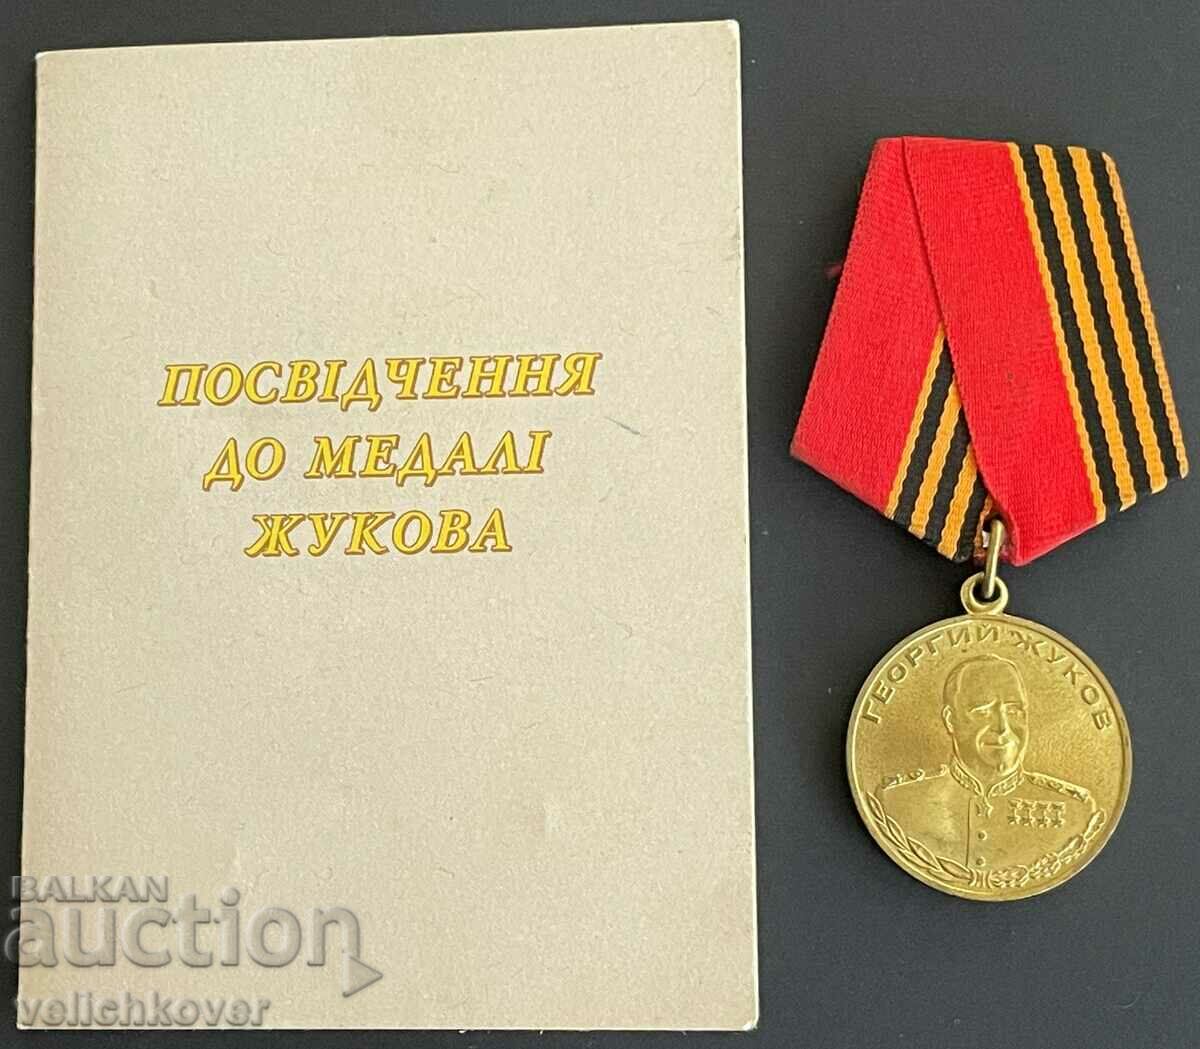 33364 Μετάλλιο Ρωσίας 100 χρόνια Από τη γέννηση του Στρατάρχη Ζούκοφ το 1996.